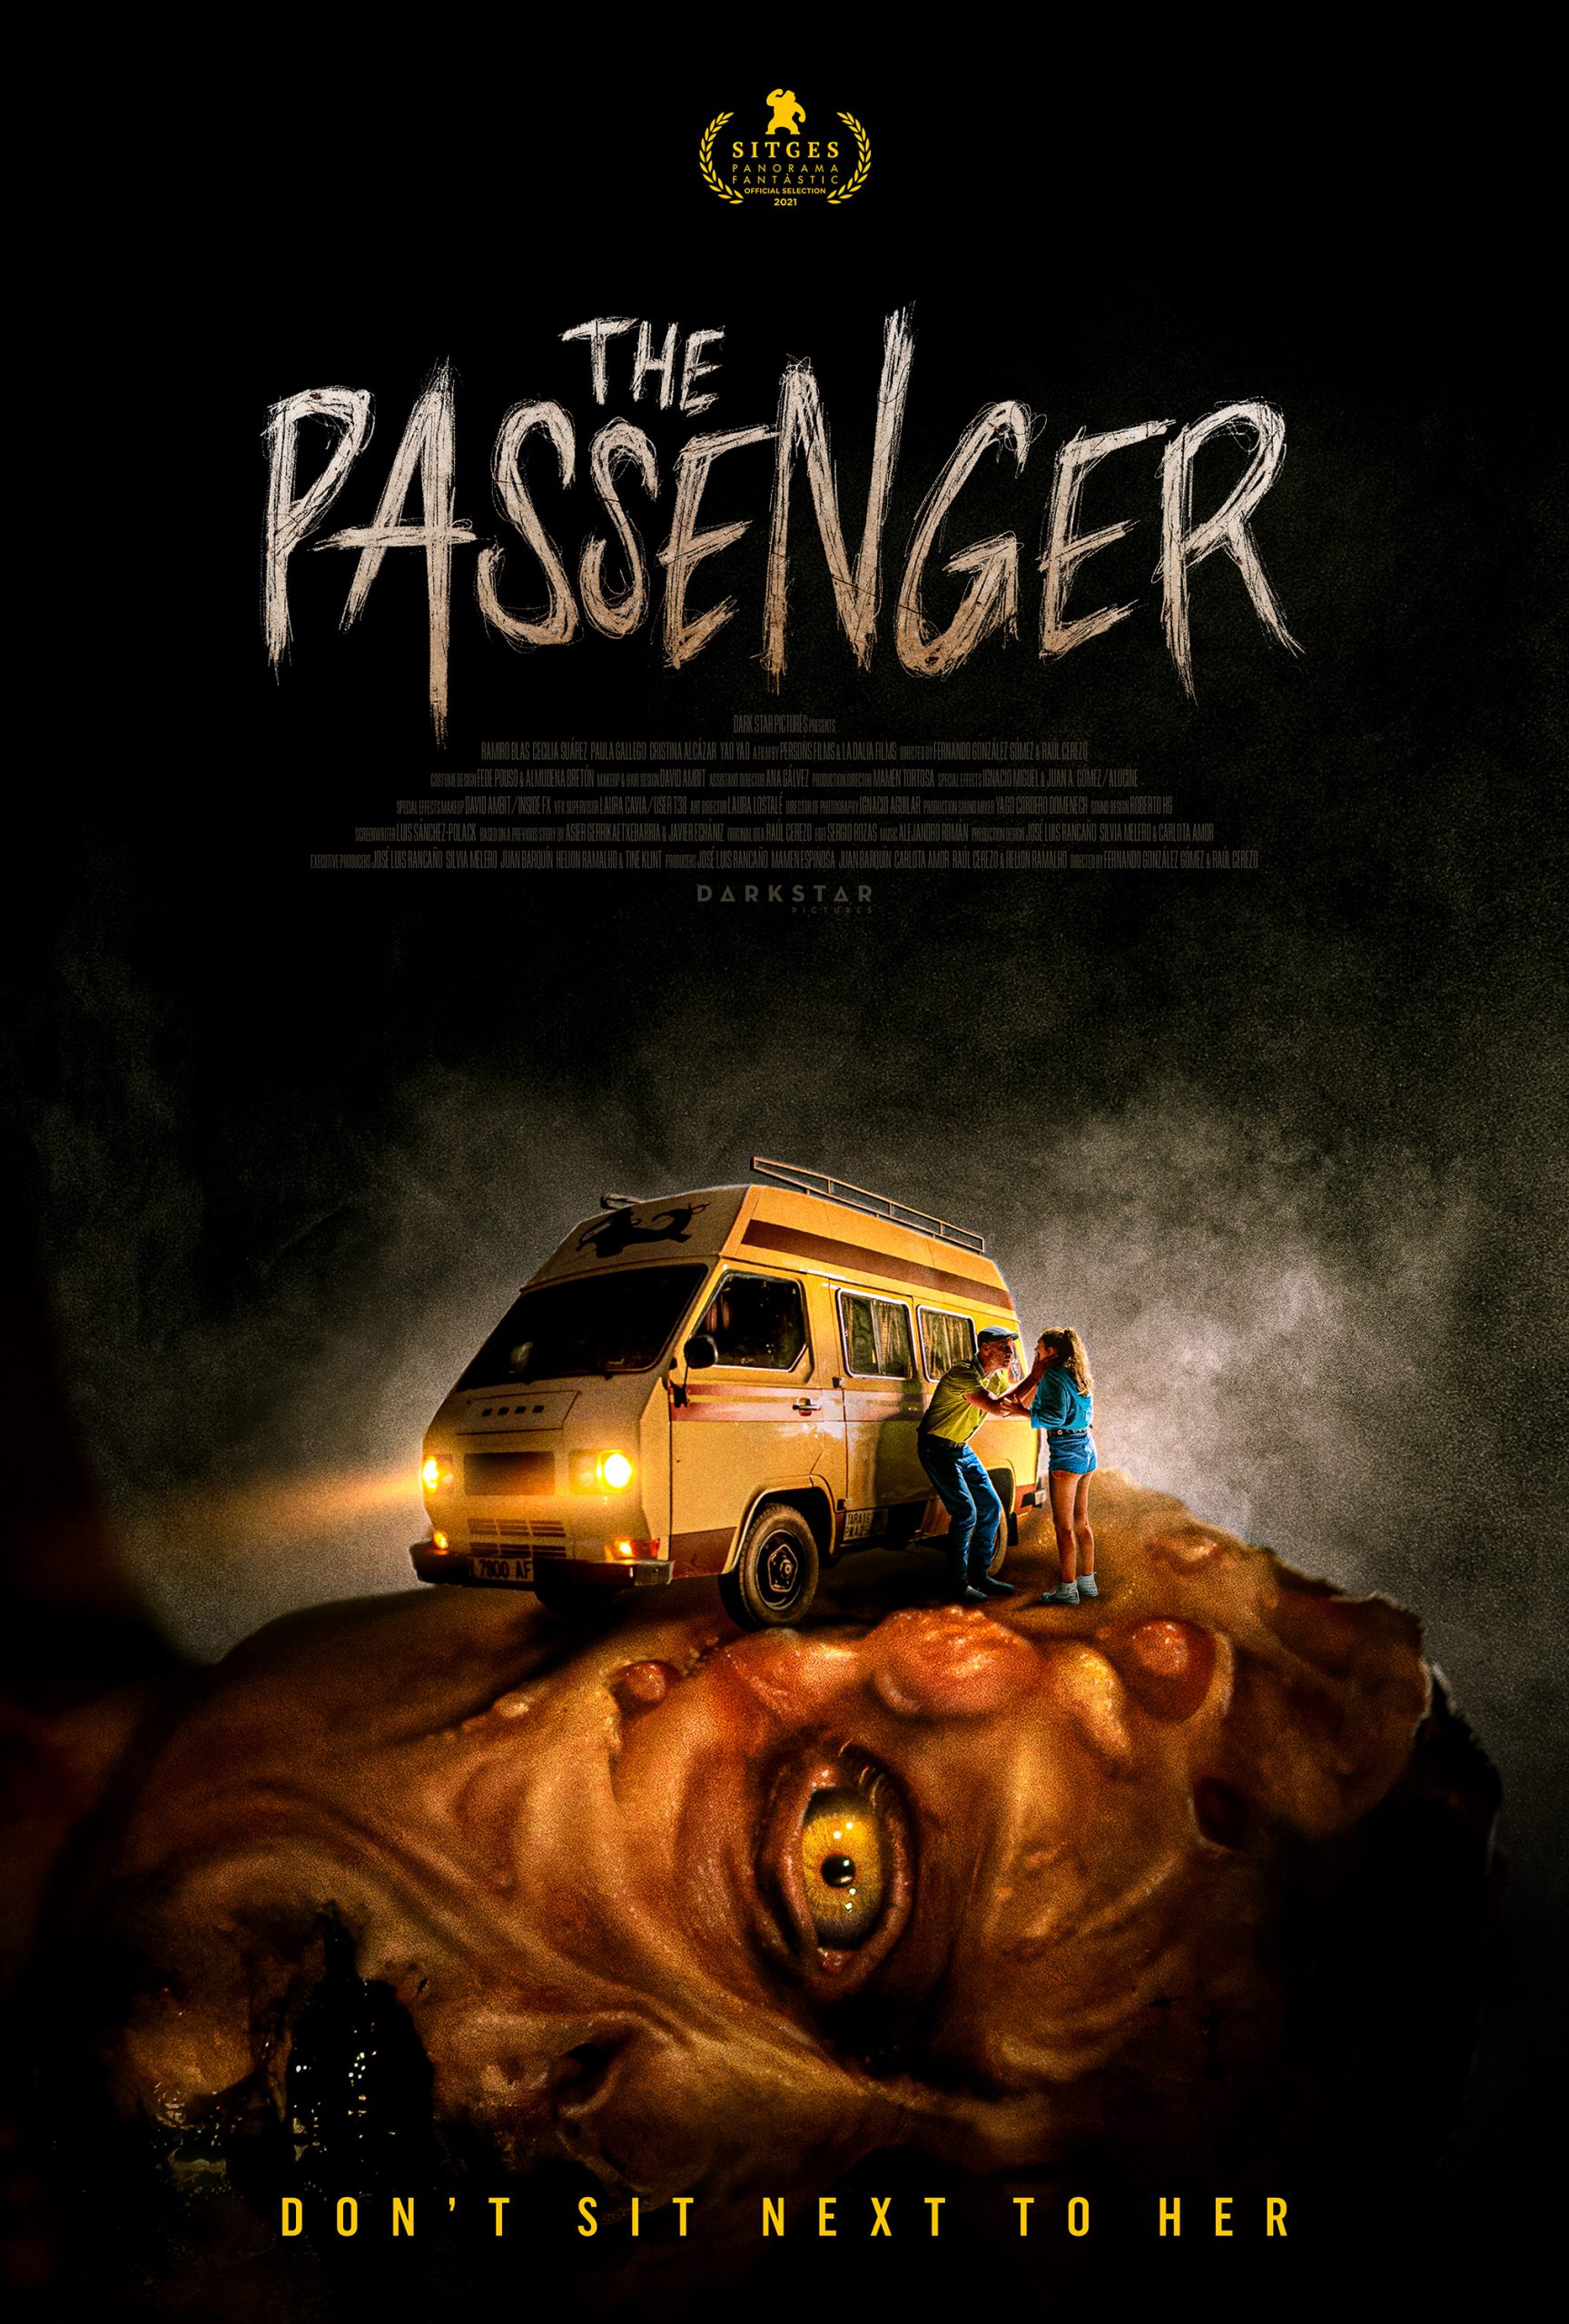 [NEWS] I trailer del fantascientifico spagnolo The Passenger